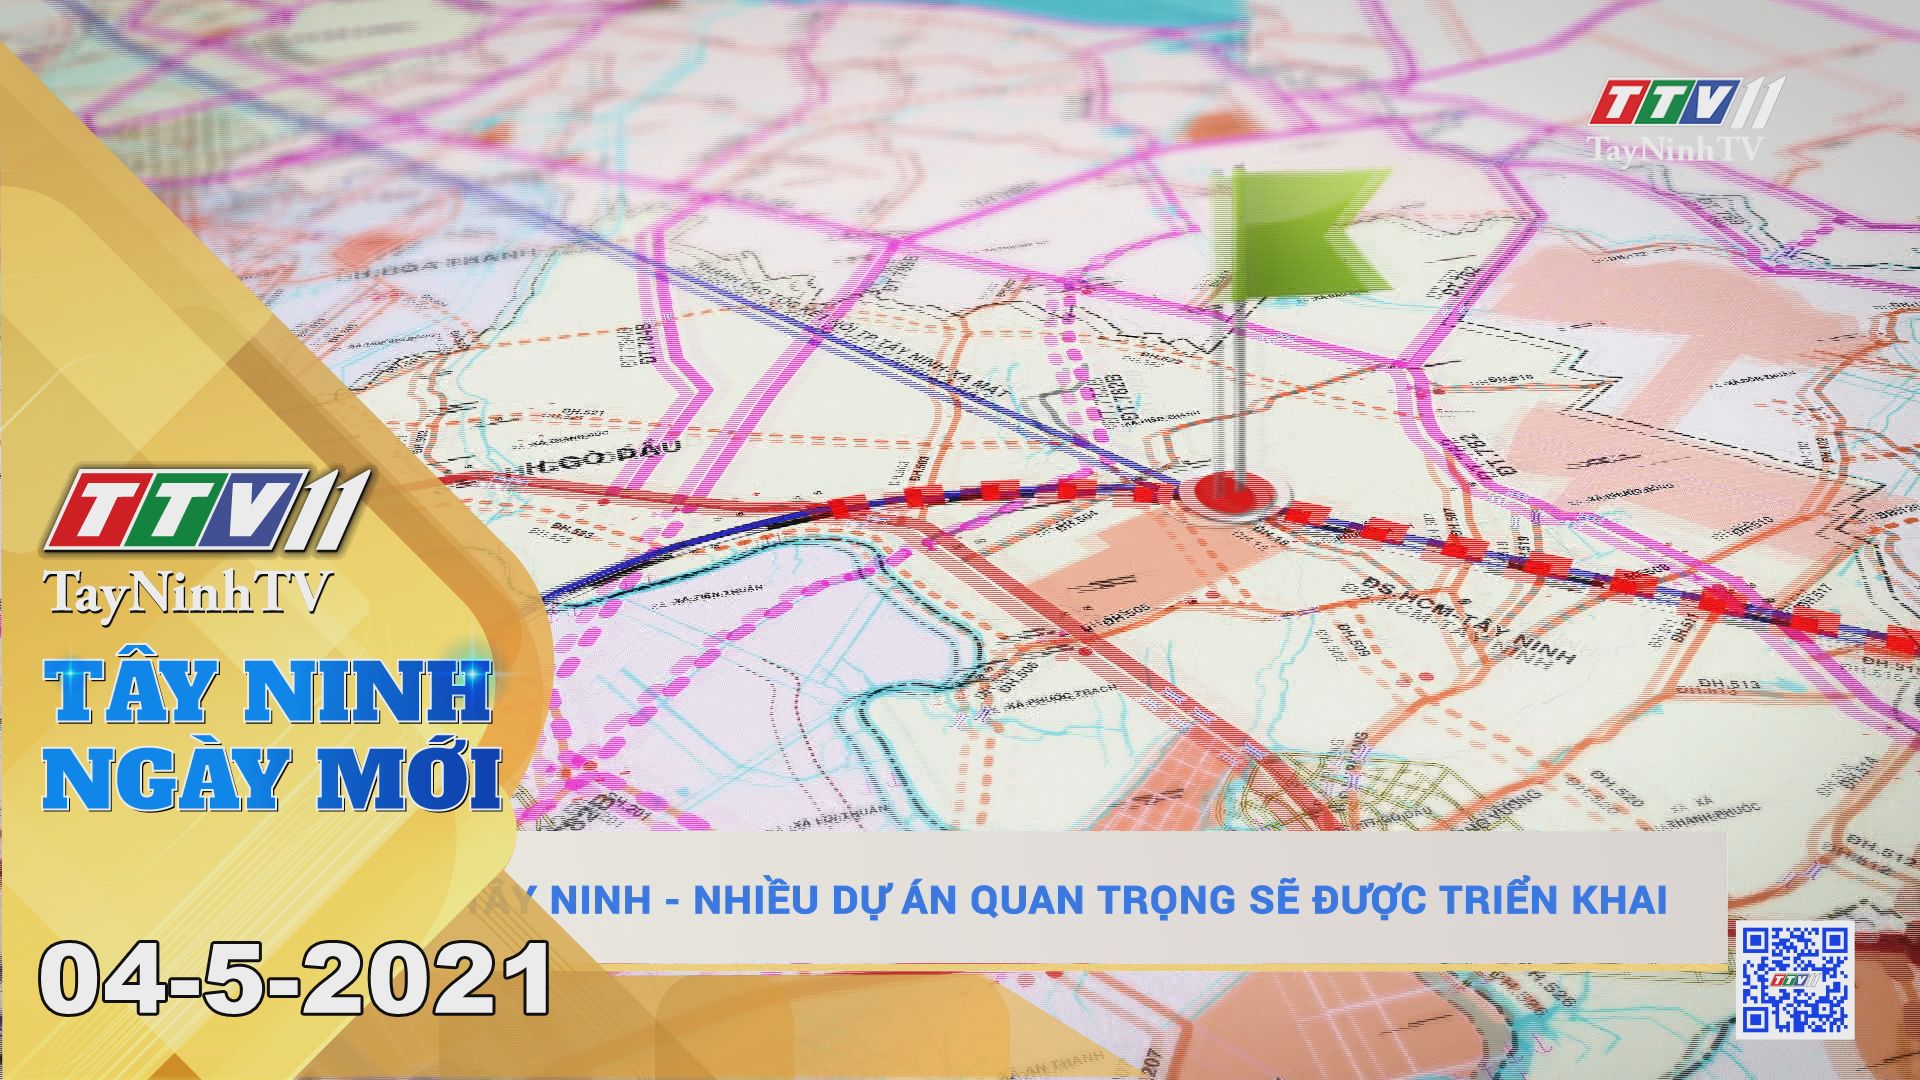 Tây Ninh Ngày Mới 04-5-2021 | Tin tức hôm nay | TayNinhTV